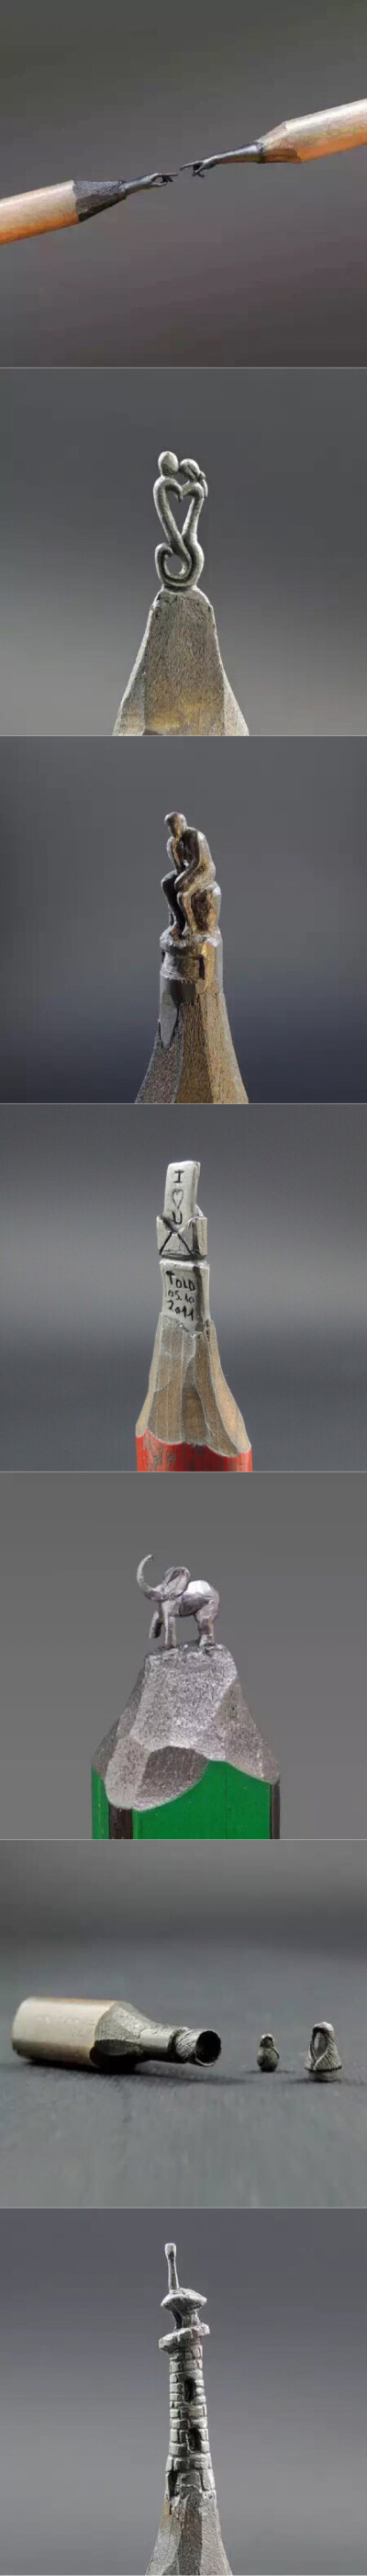 艺术家Jasenko Đorđević刀下的这些铅笔头雕塑可是有着数十年功力，胆大心细，技艺超群。相比于我们之前介绍过的铅笔头系列，是否不分伯仲，难较高下呢？！(2-2)